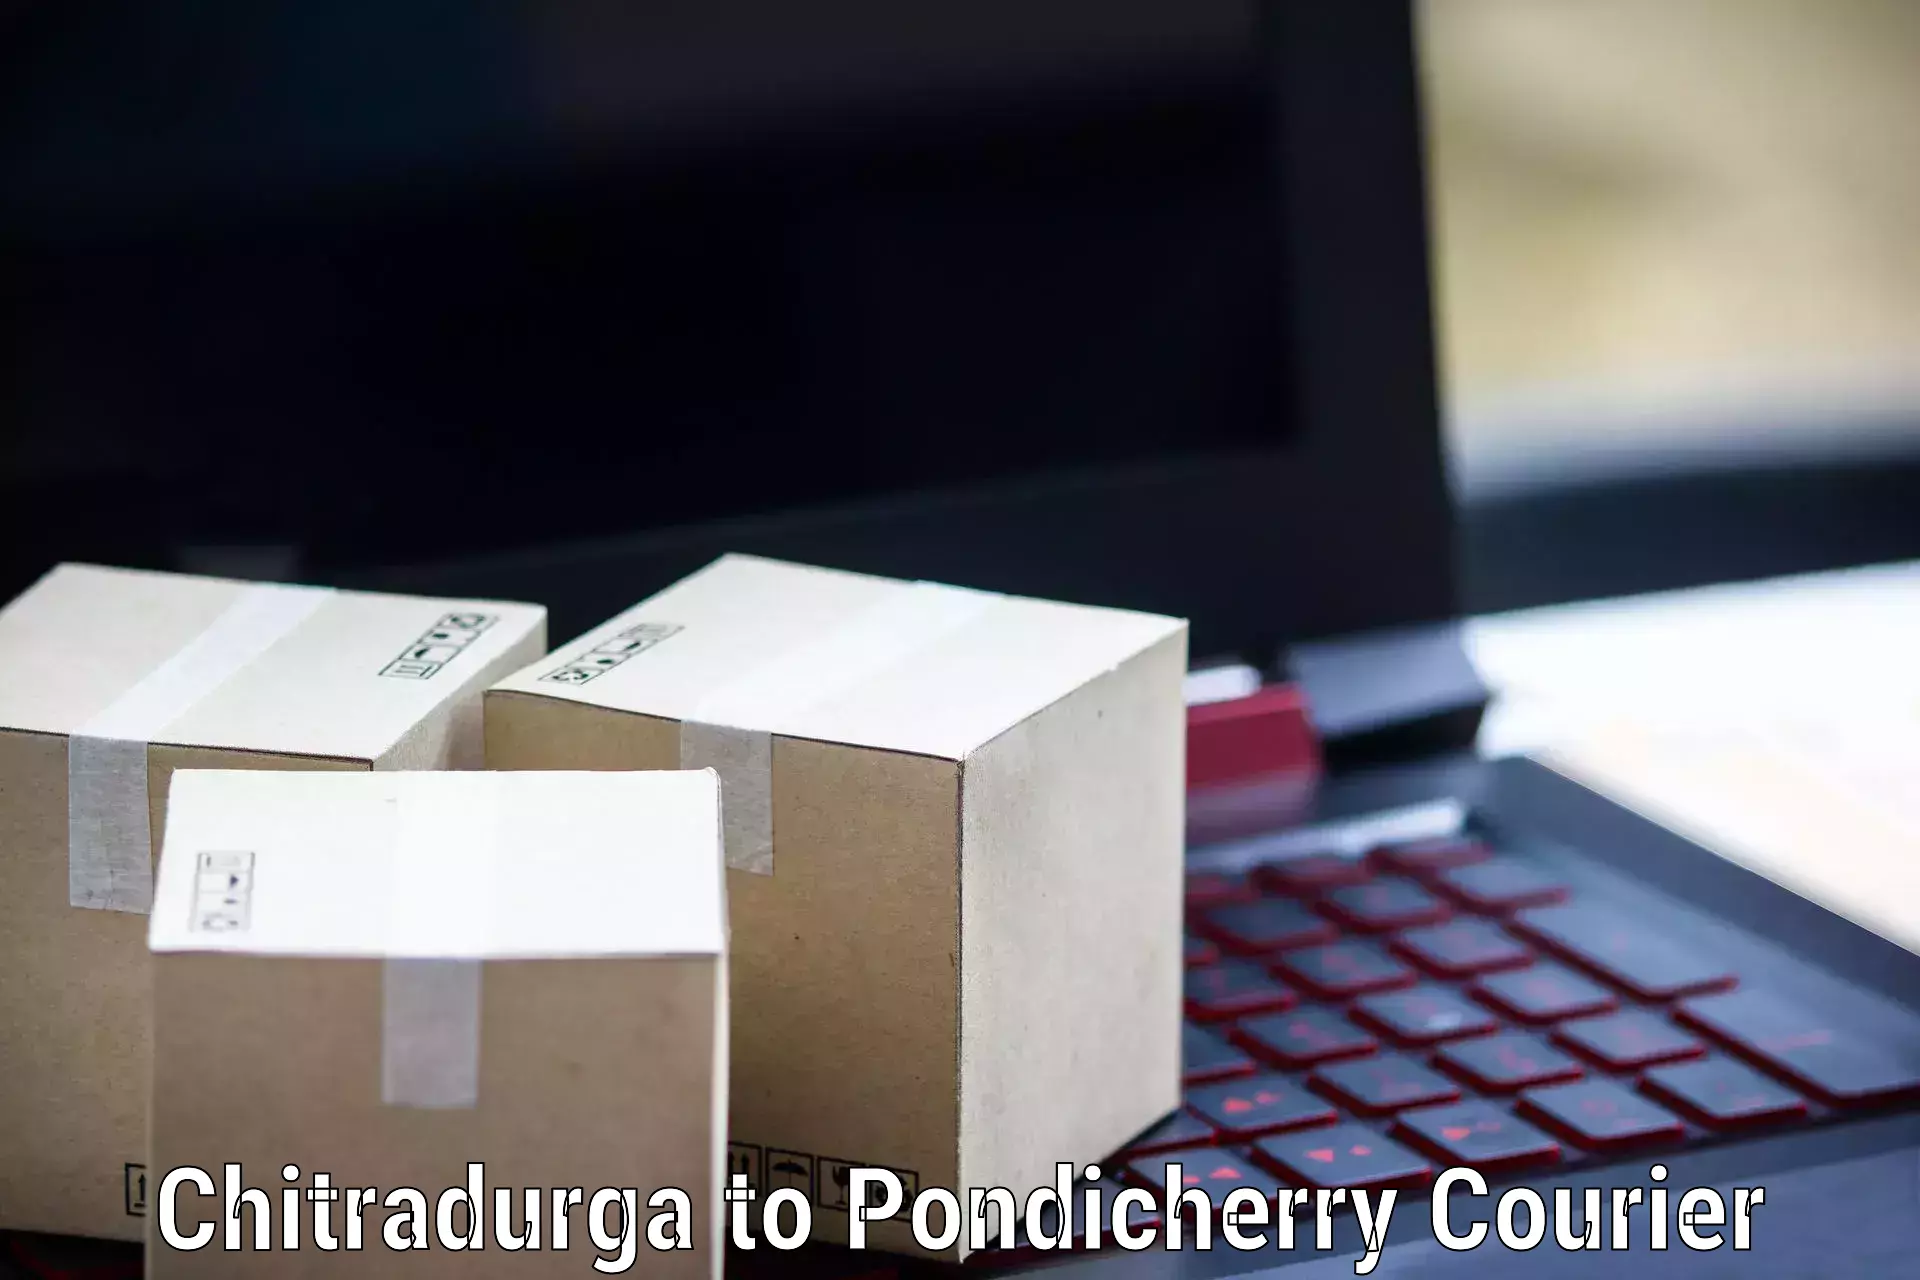 Modern delivery methods Chitradurga to Pondicherry